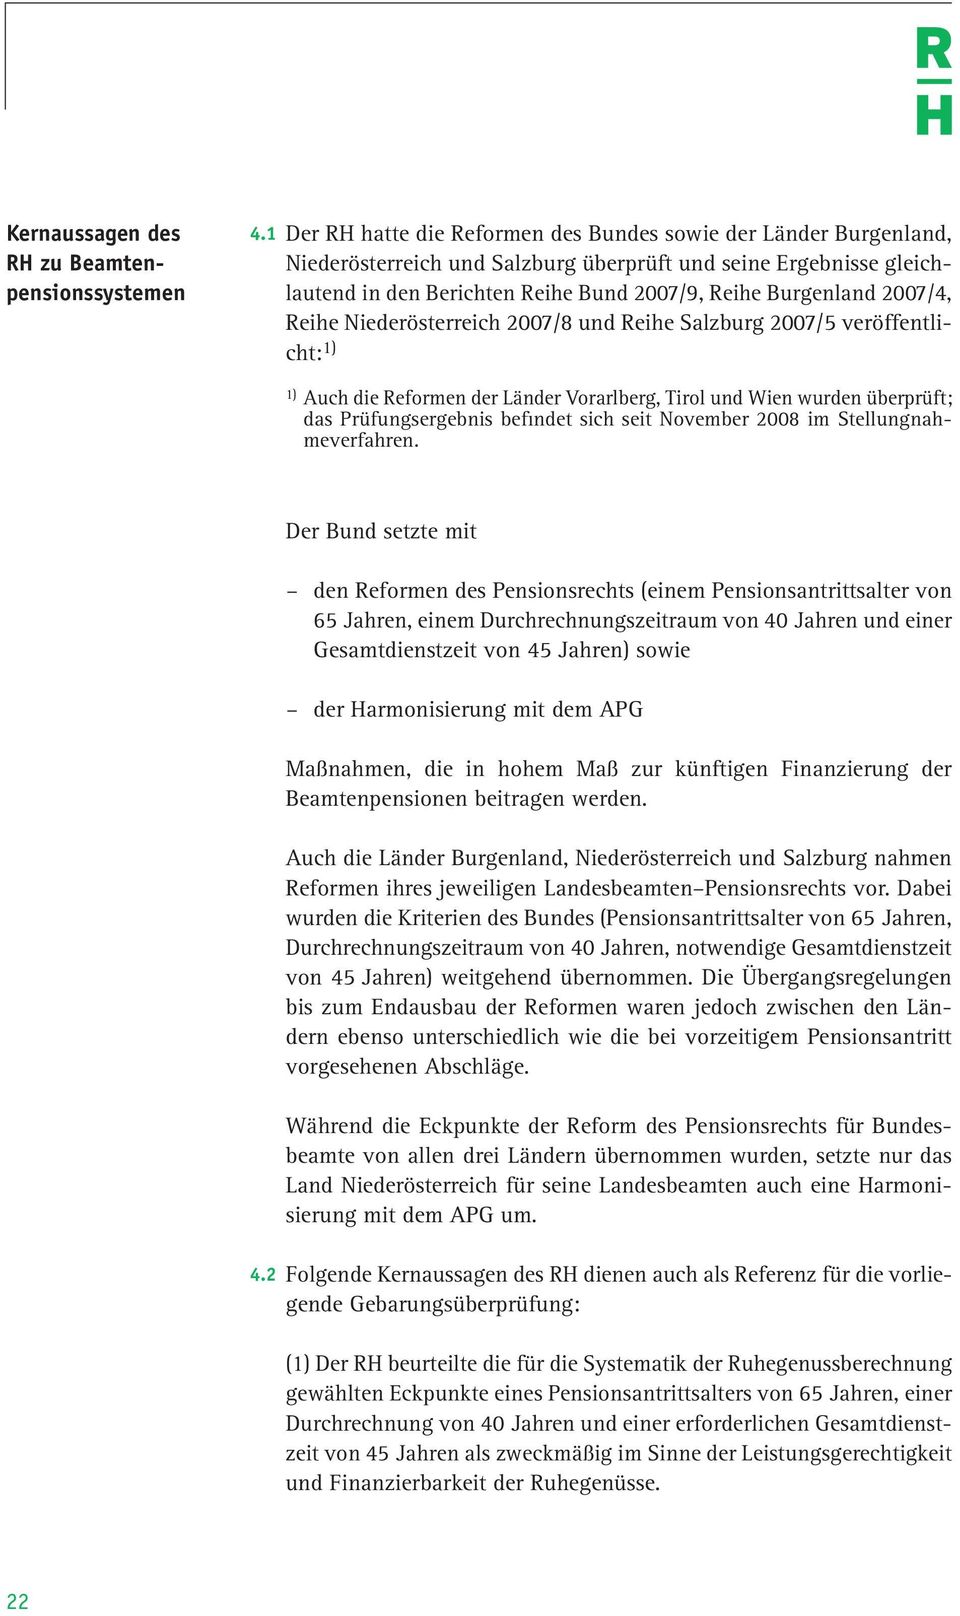 2007/4, Reihe Niederösterreich 2007/8 und Reihe Salz burg 2007/5 veröffentlicht: 1) 1) Auch die Reformen der Länder Vorarlberg, Tirol und Wien wurden überprüft; das Prüfungsergebnis befindet sich